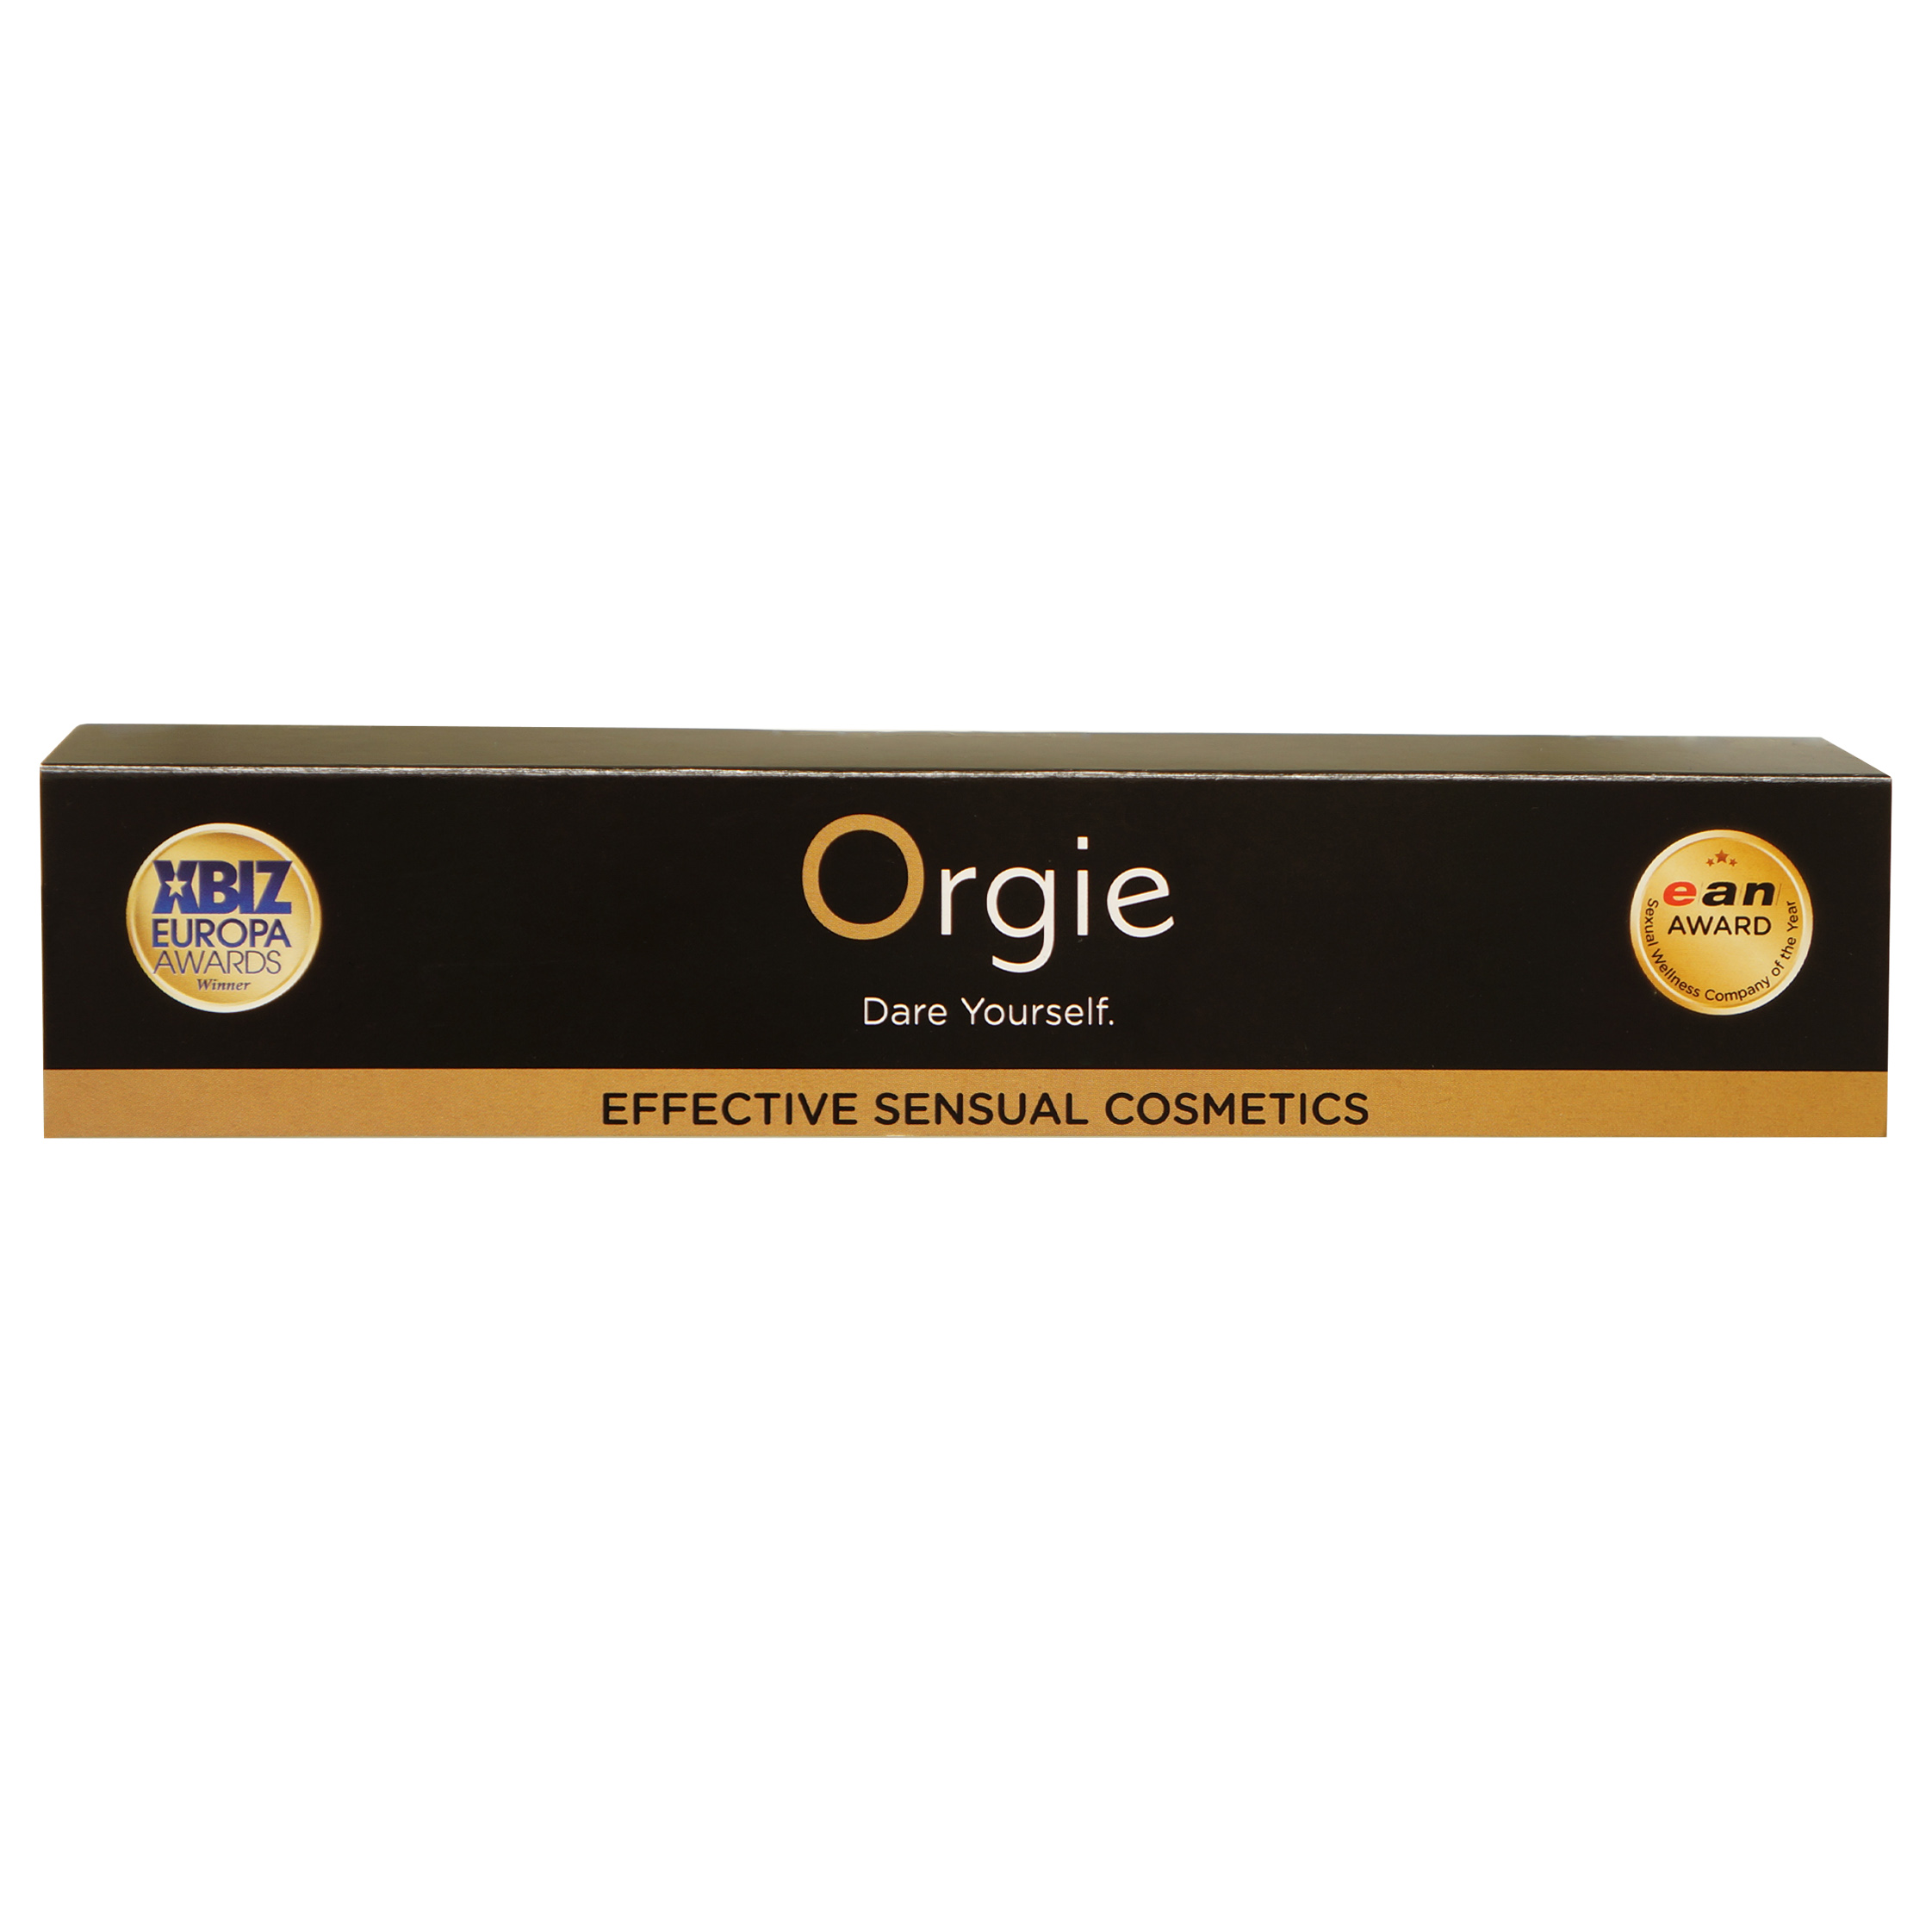 ORGIE Regal Schild / Shelf sign 